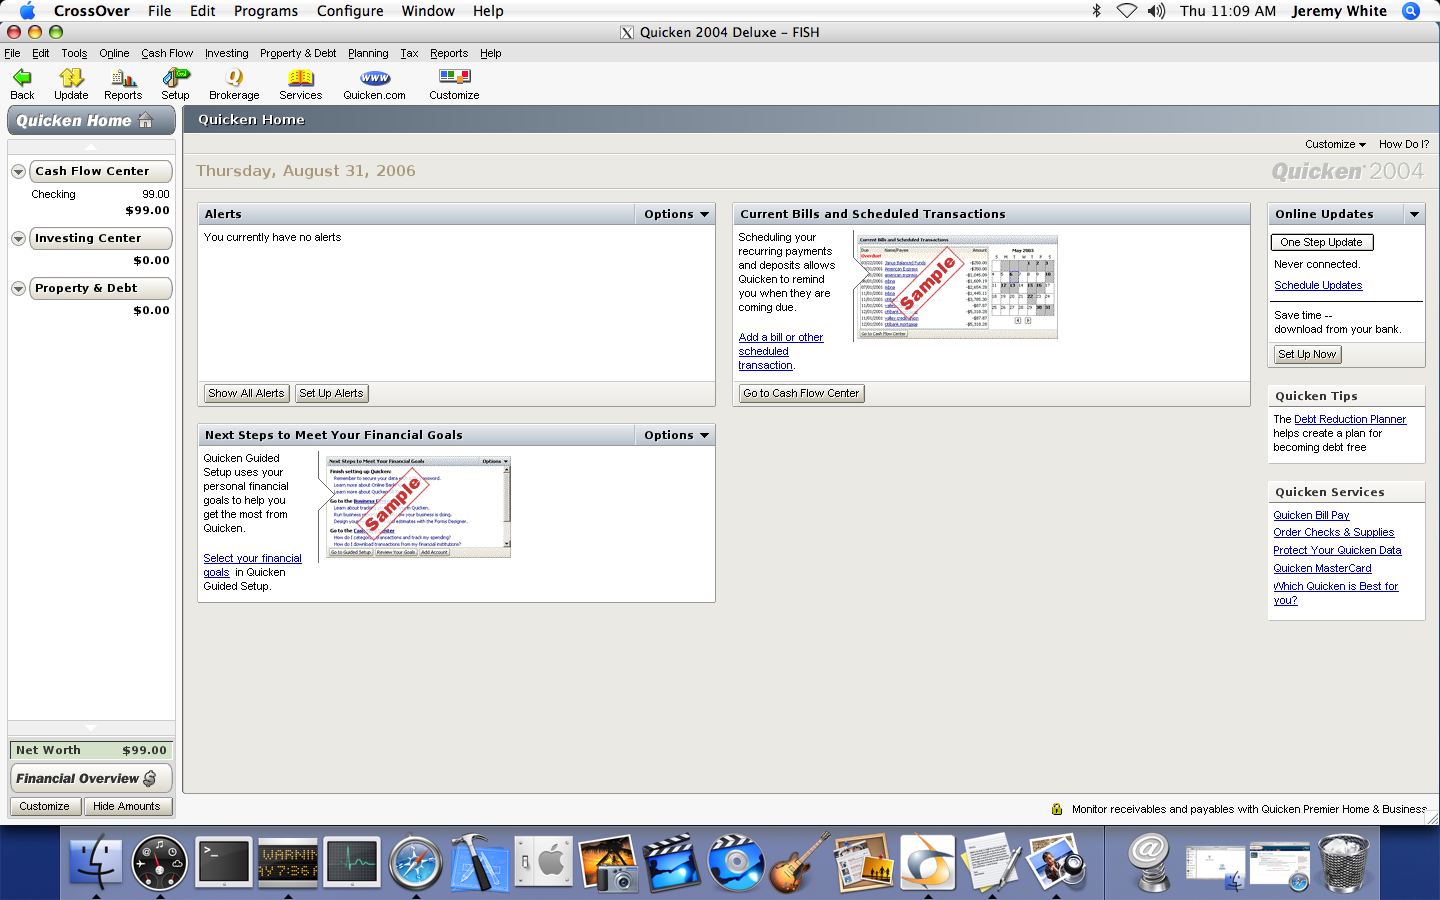 quicken 2007 for mac 16.1.2